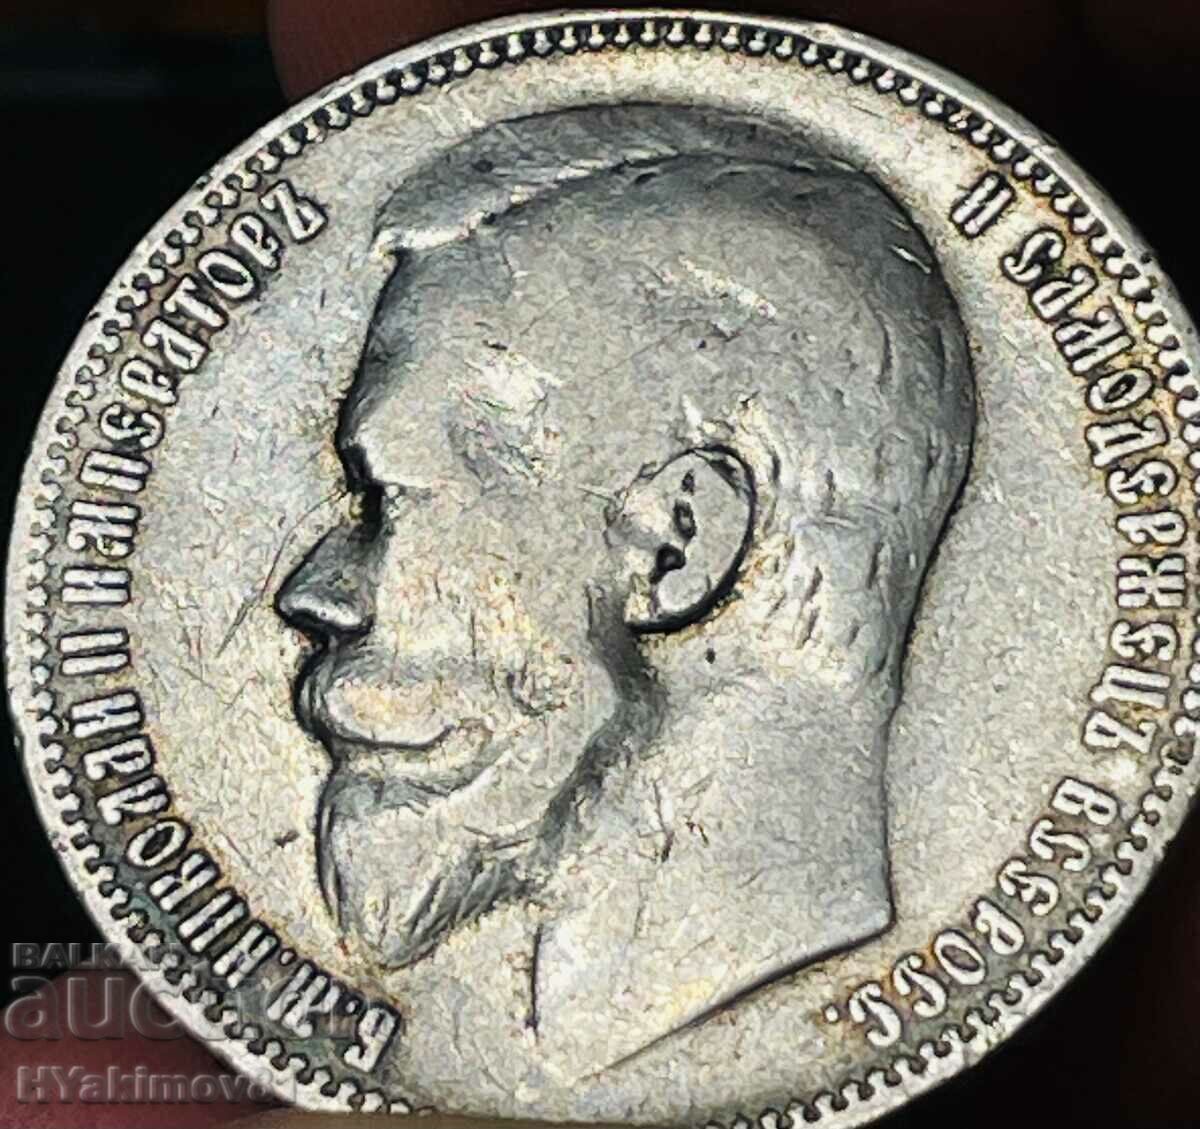 1 rublă din 1899